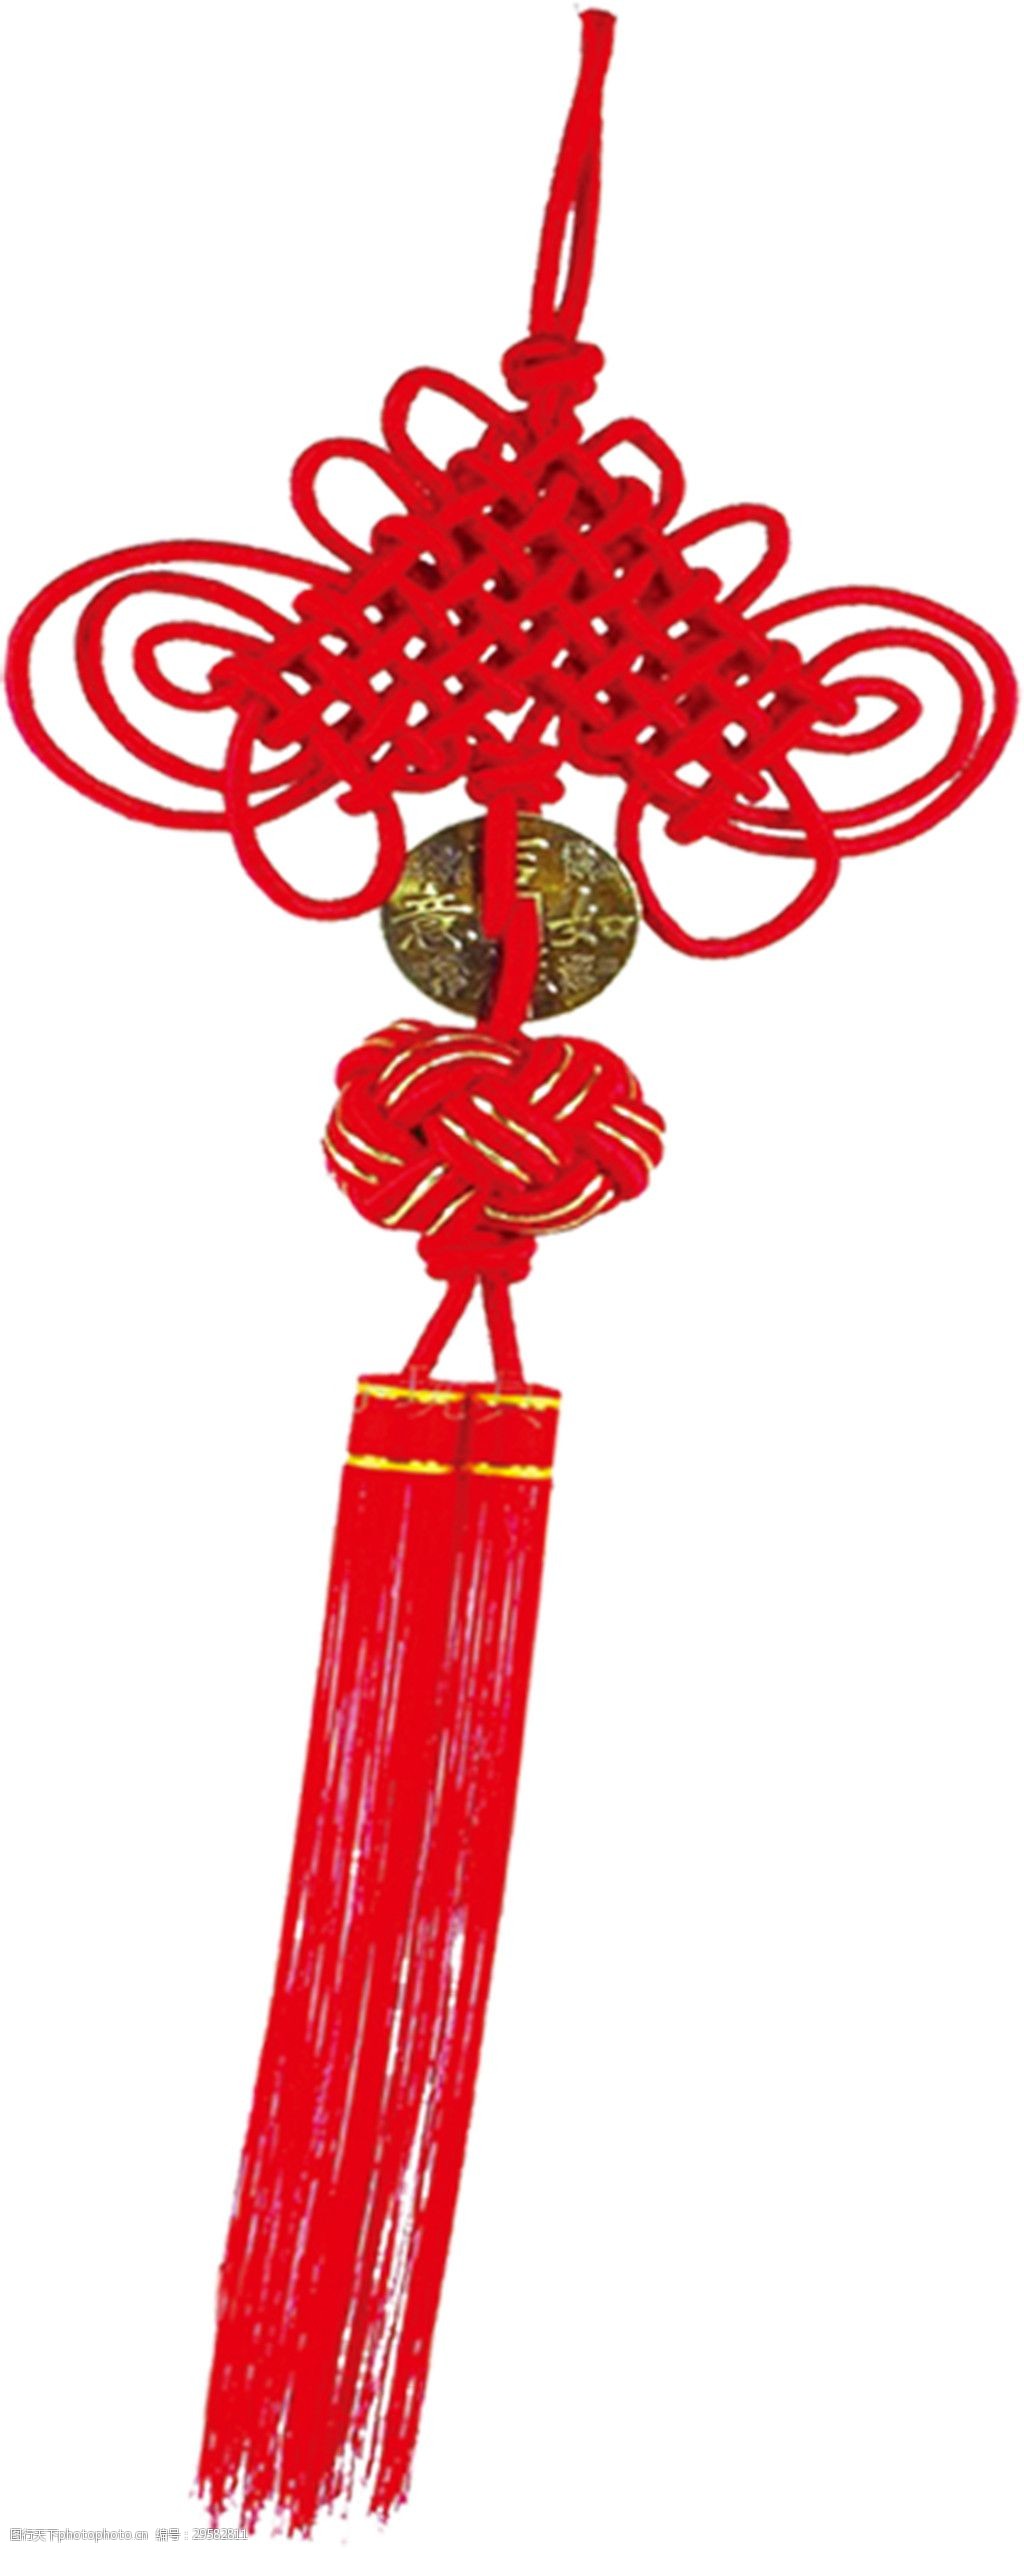 关键词:红色金丝编制喜庆中国结元素 传统元素 吉庆有余 吉祥如意